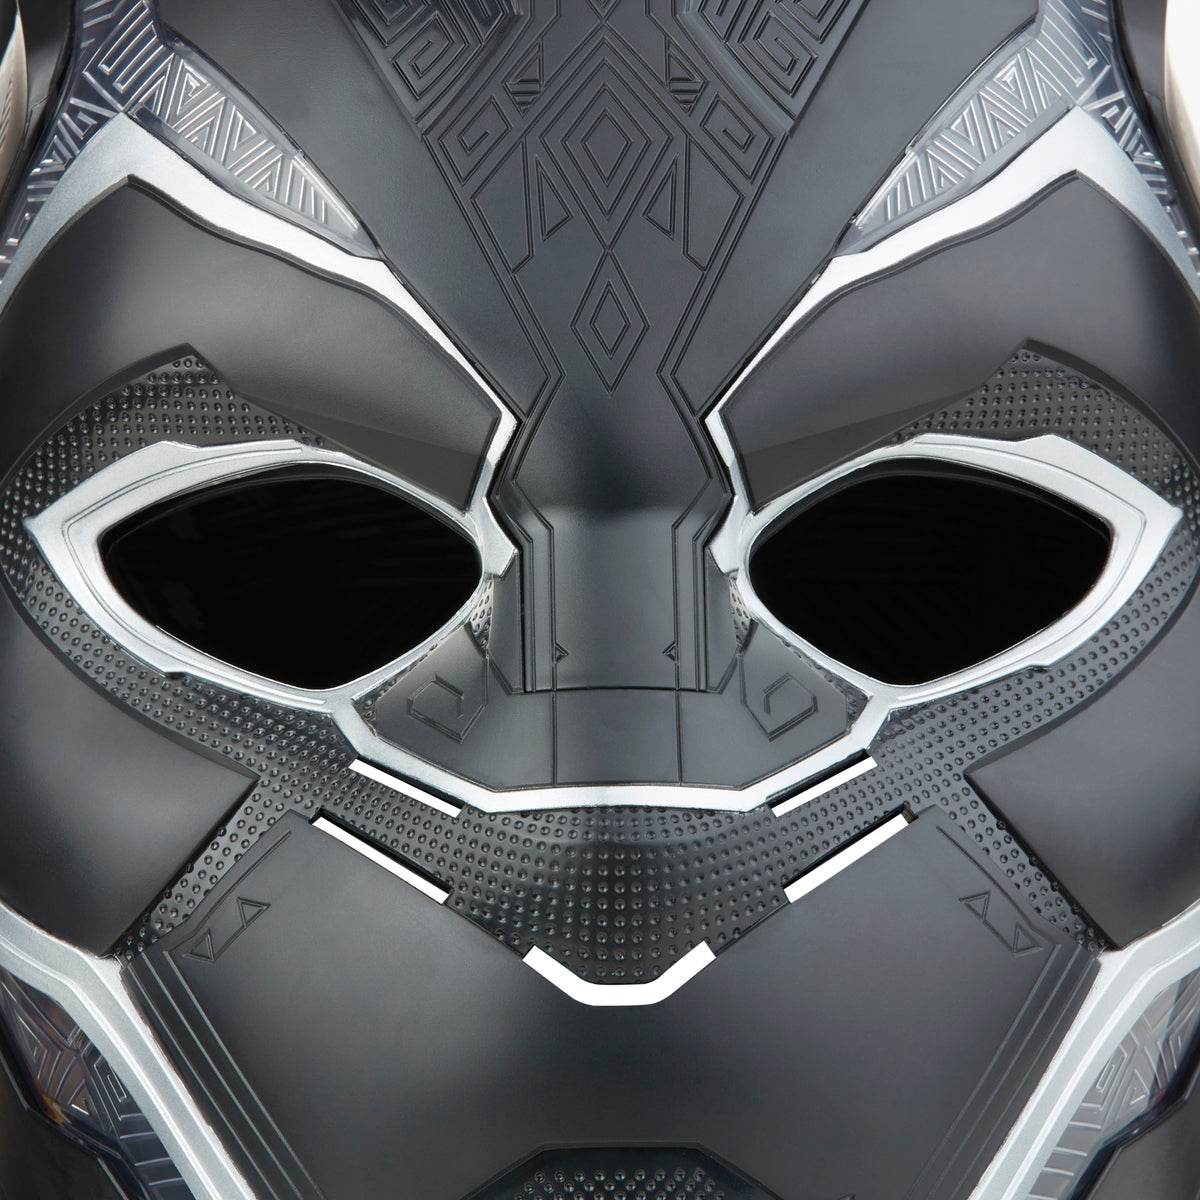 Black panther helmet